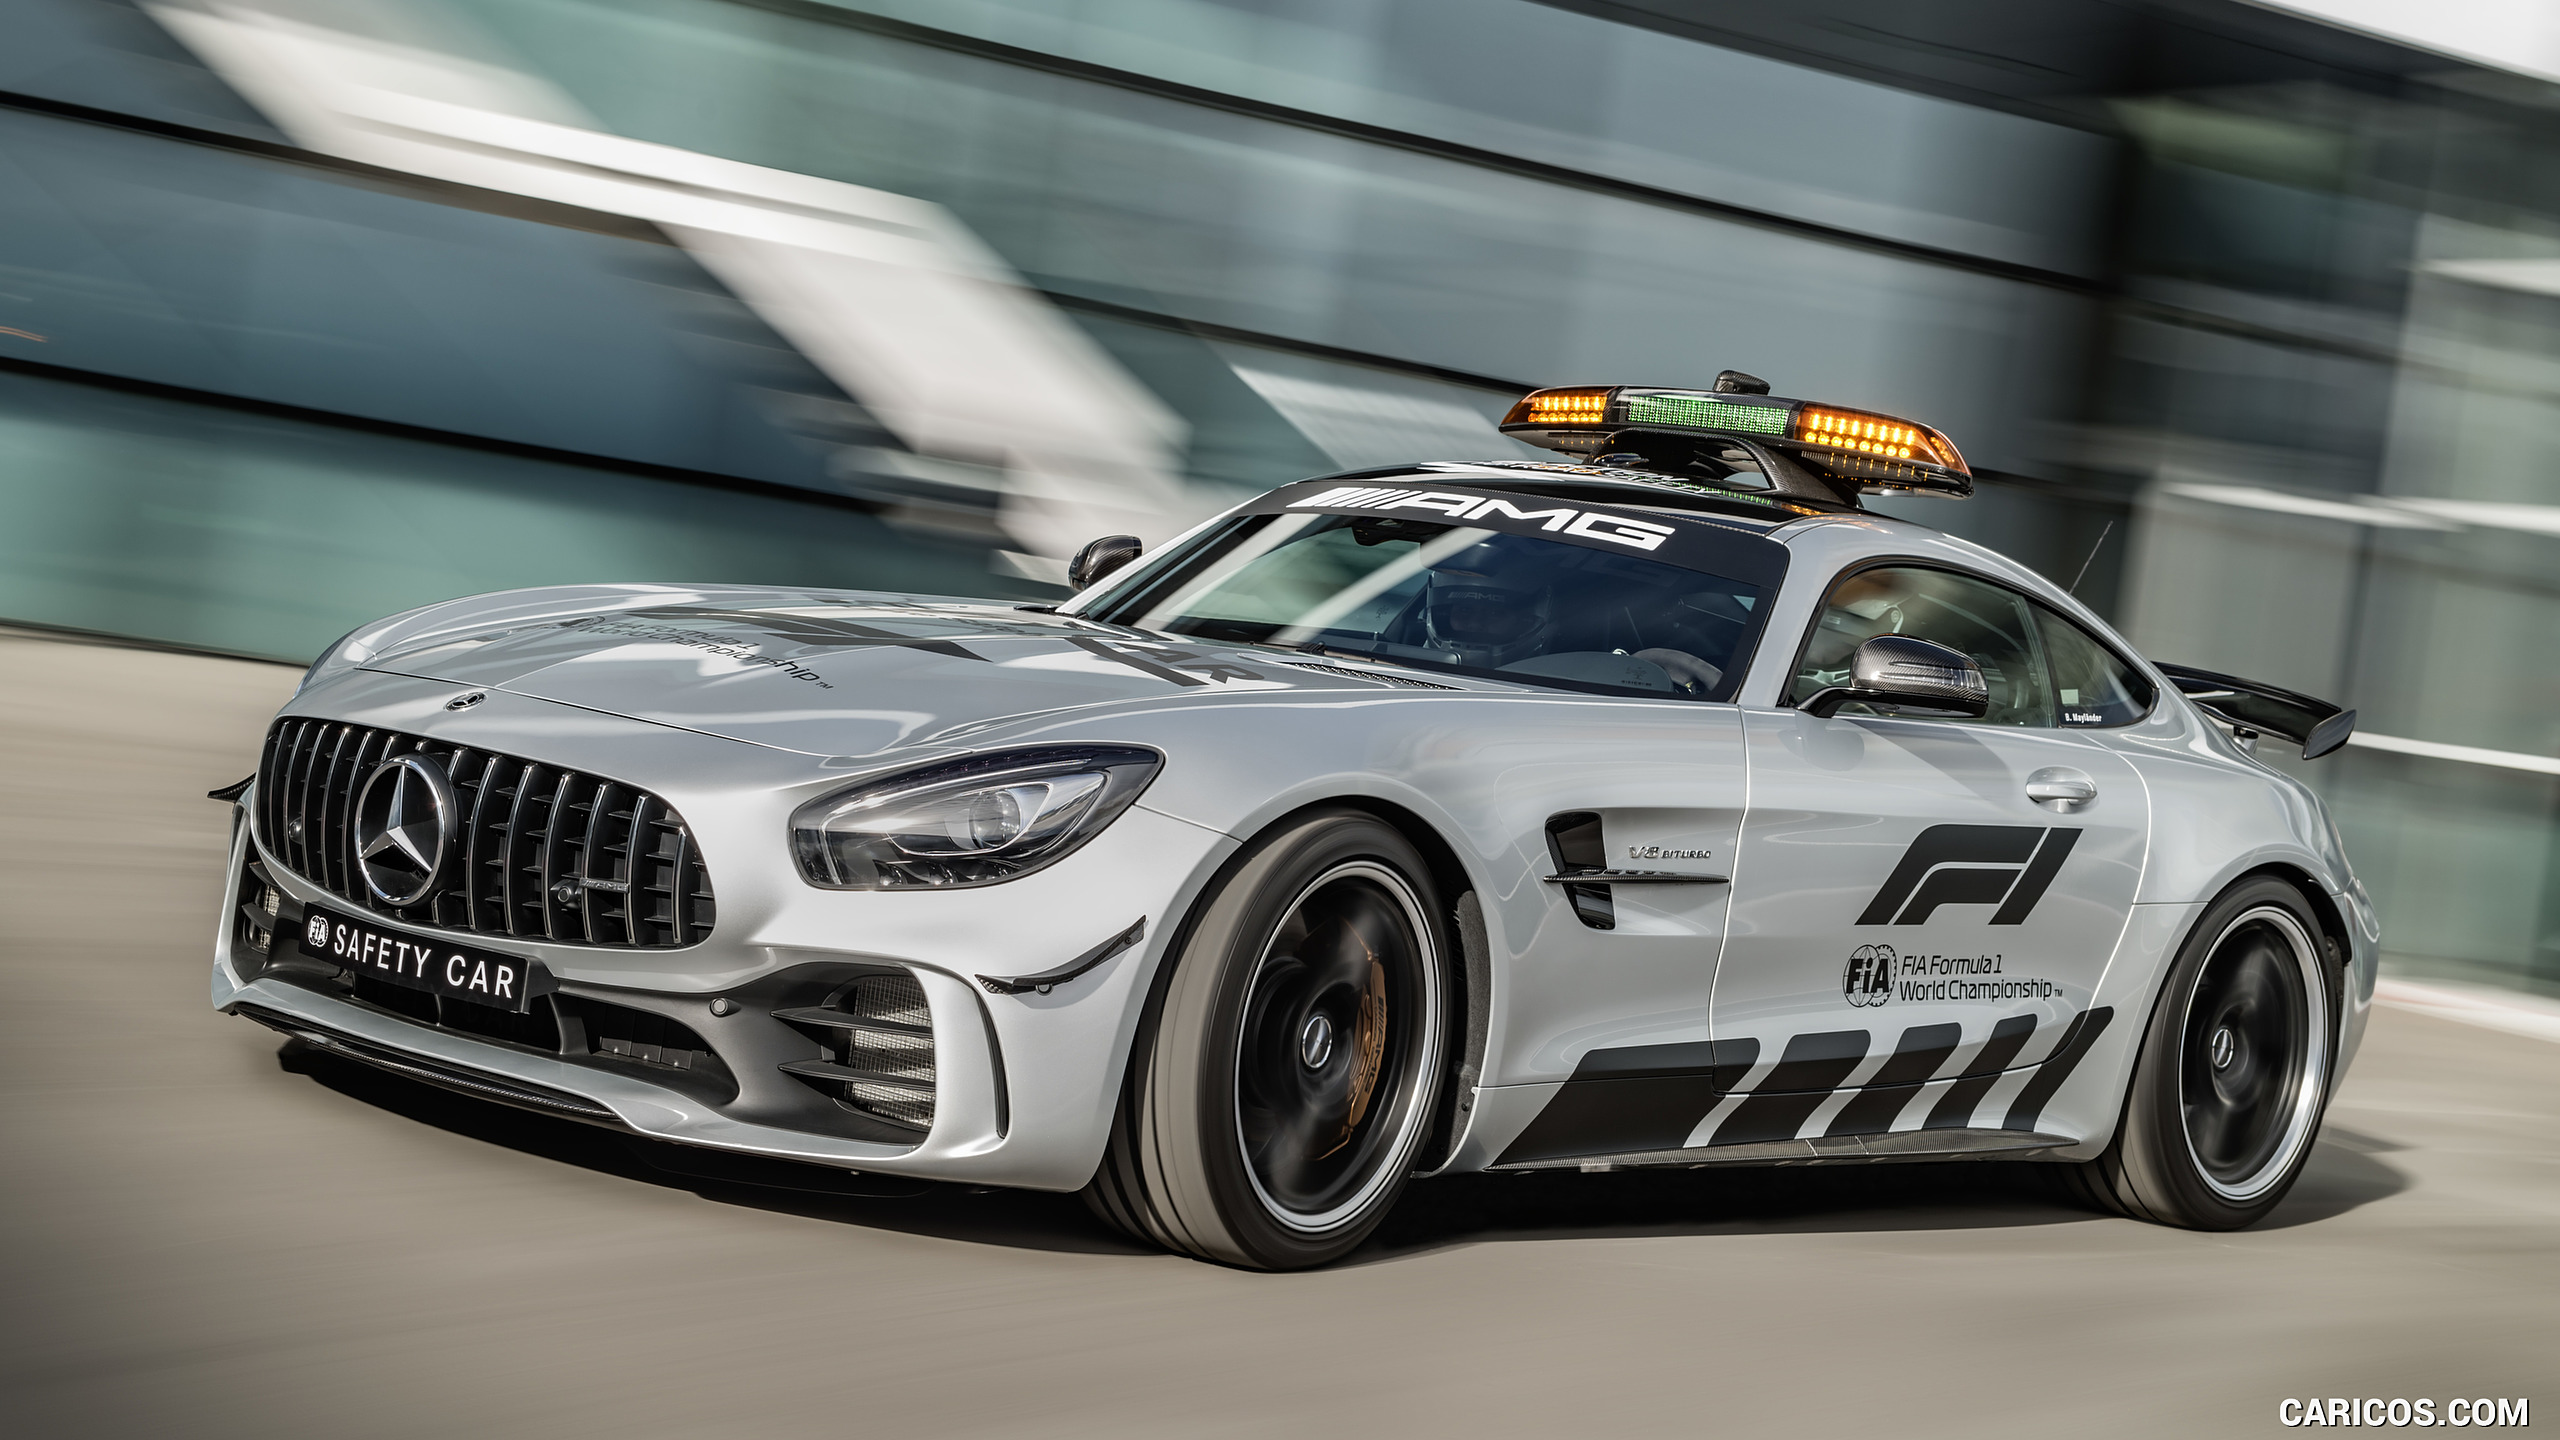 2018 Mercedes-AMG GT R Formula 1 Safety Car , #1 of 34